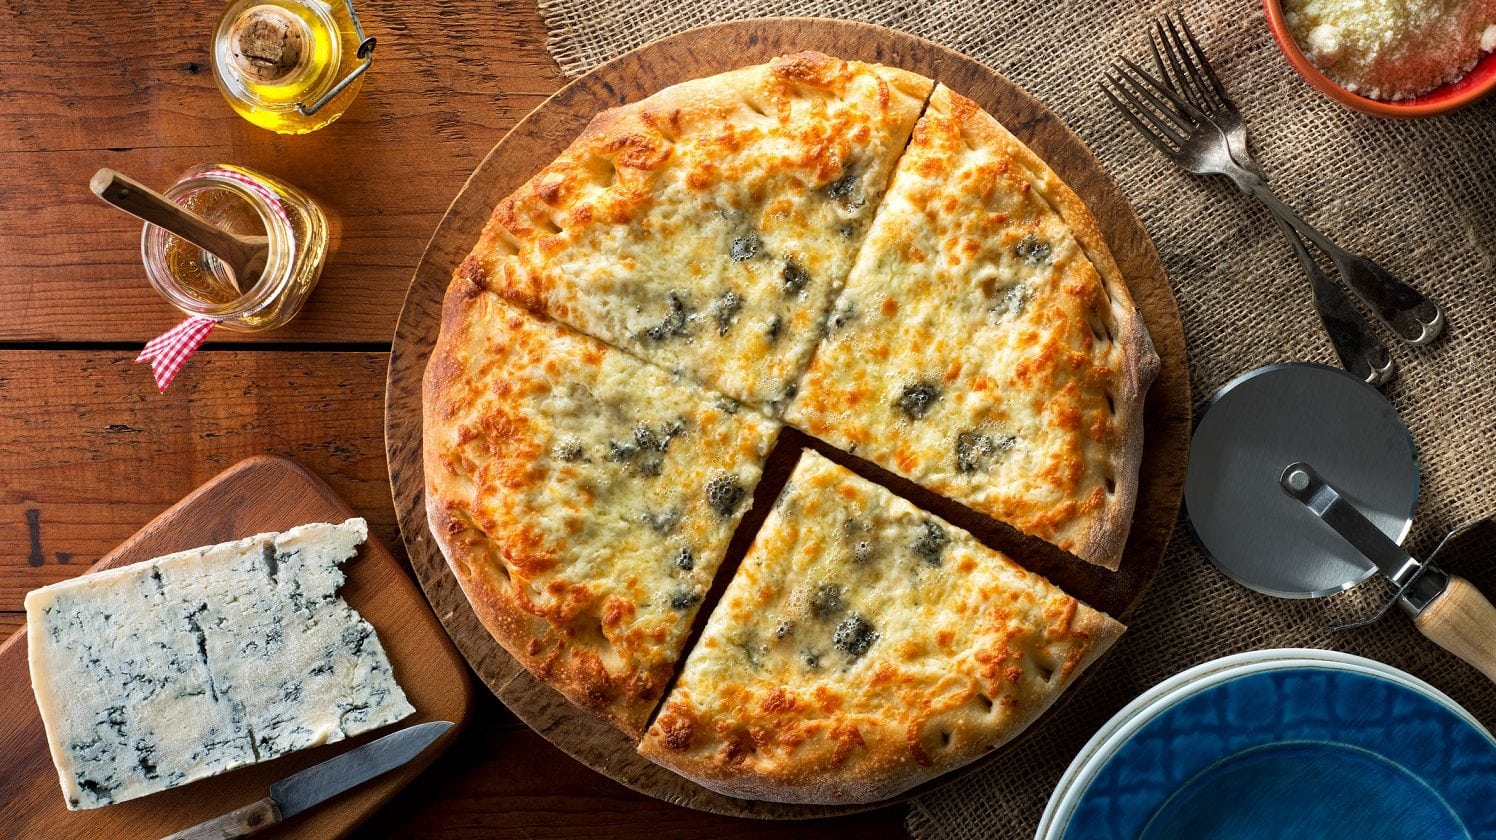 Draufsicht: eine Pizza Margherita mit Blauschimmelkäse die in 4 teile geschnitten wurde liegt auf einem Holztisch. Daneben liegt ein Blauschimmelkäse sowie ein Besteck.